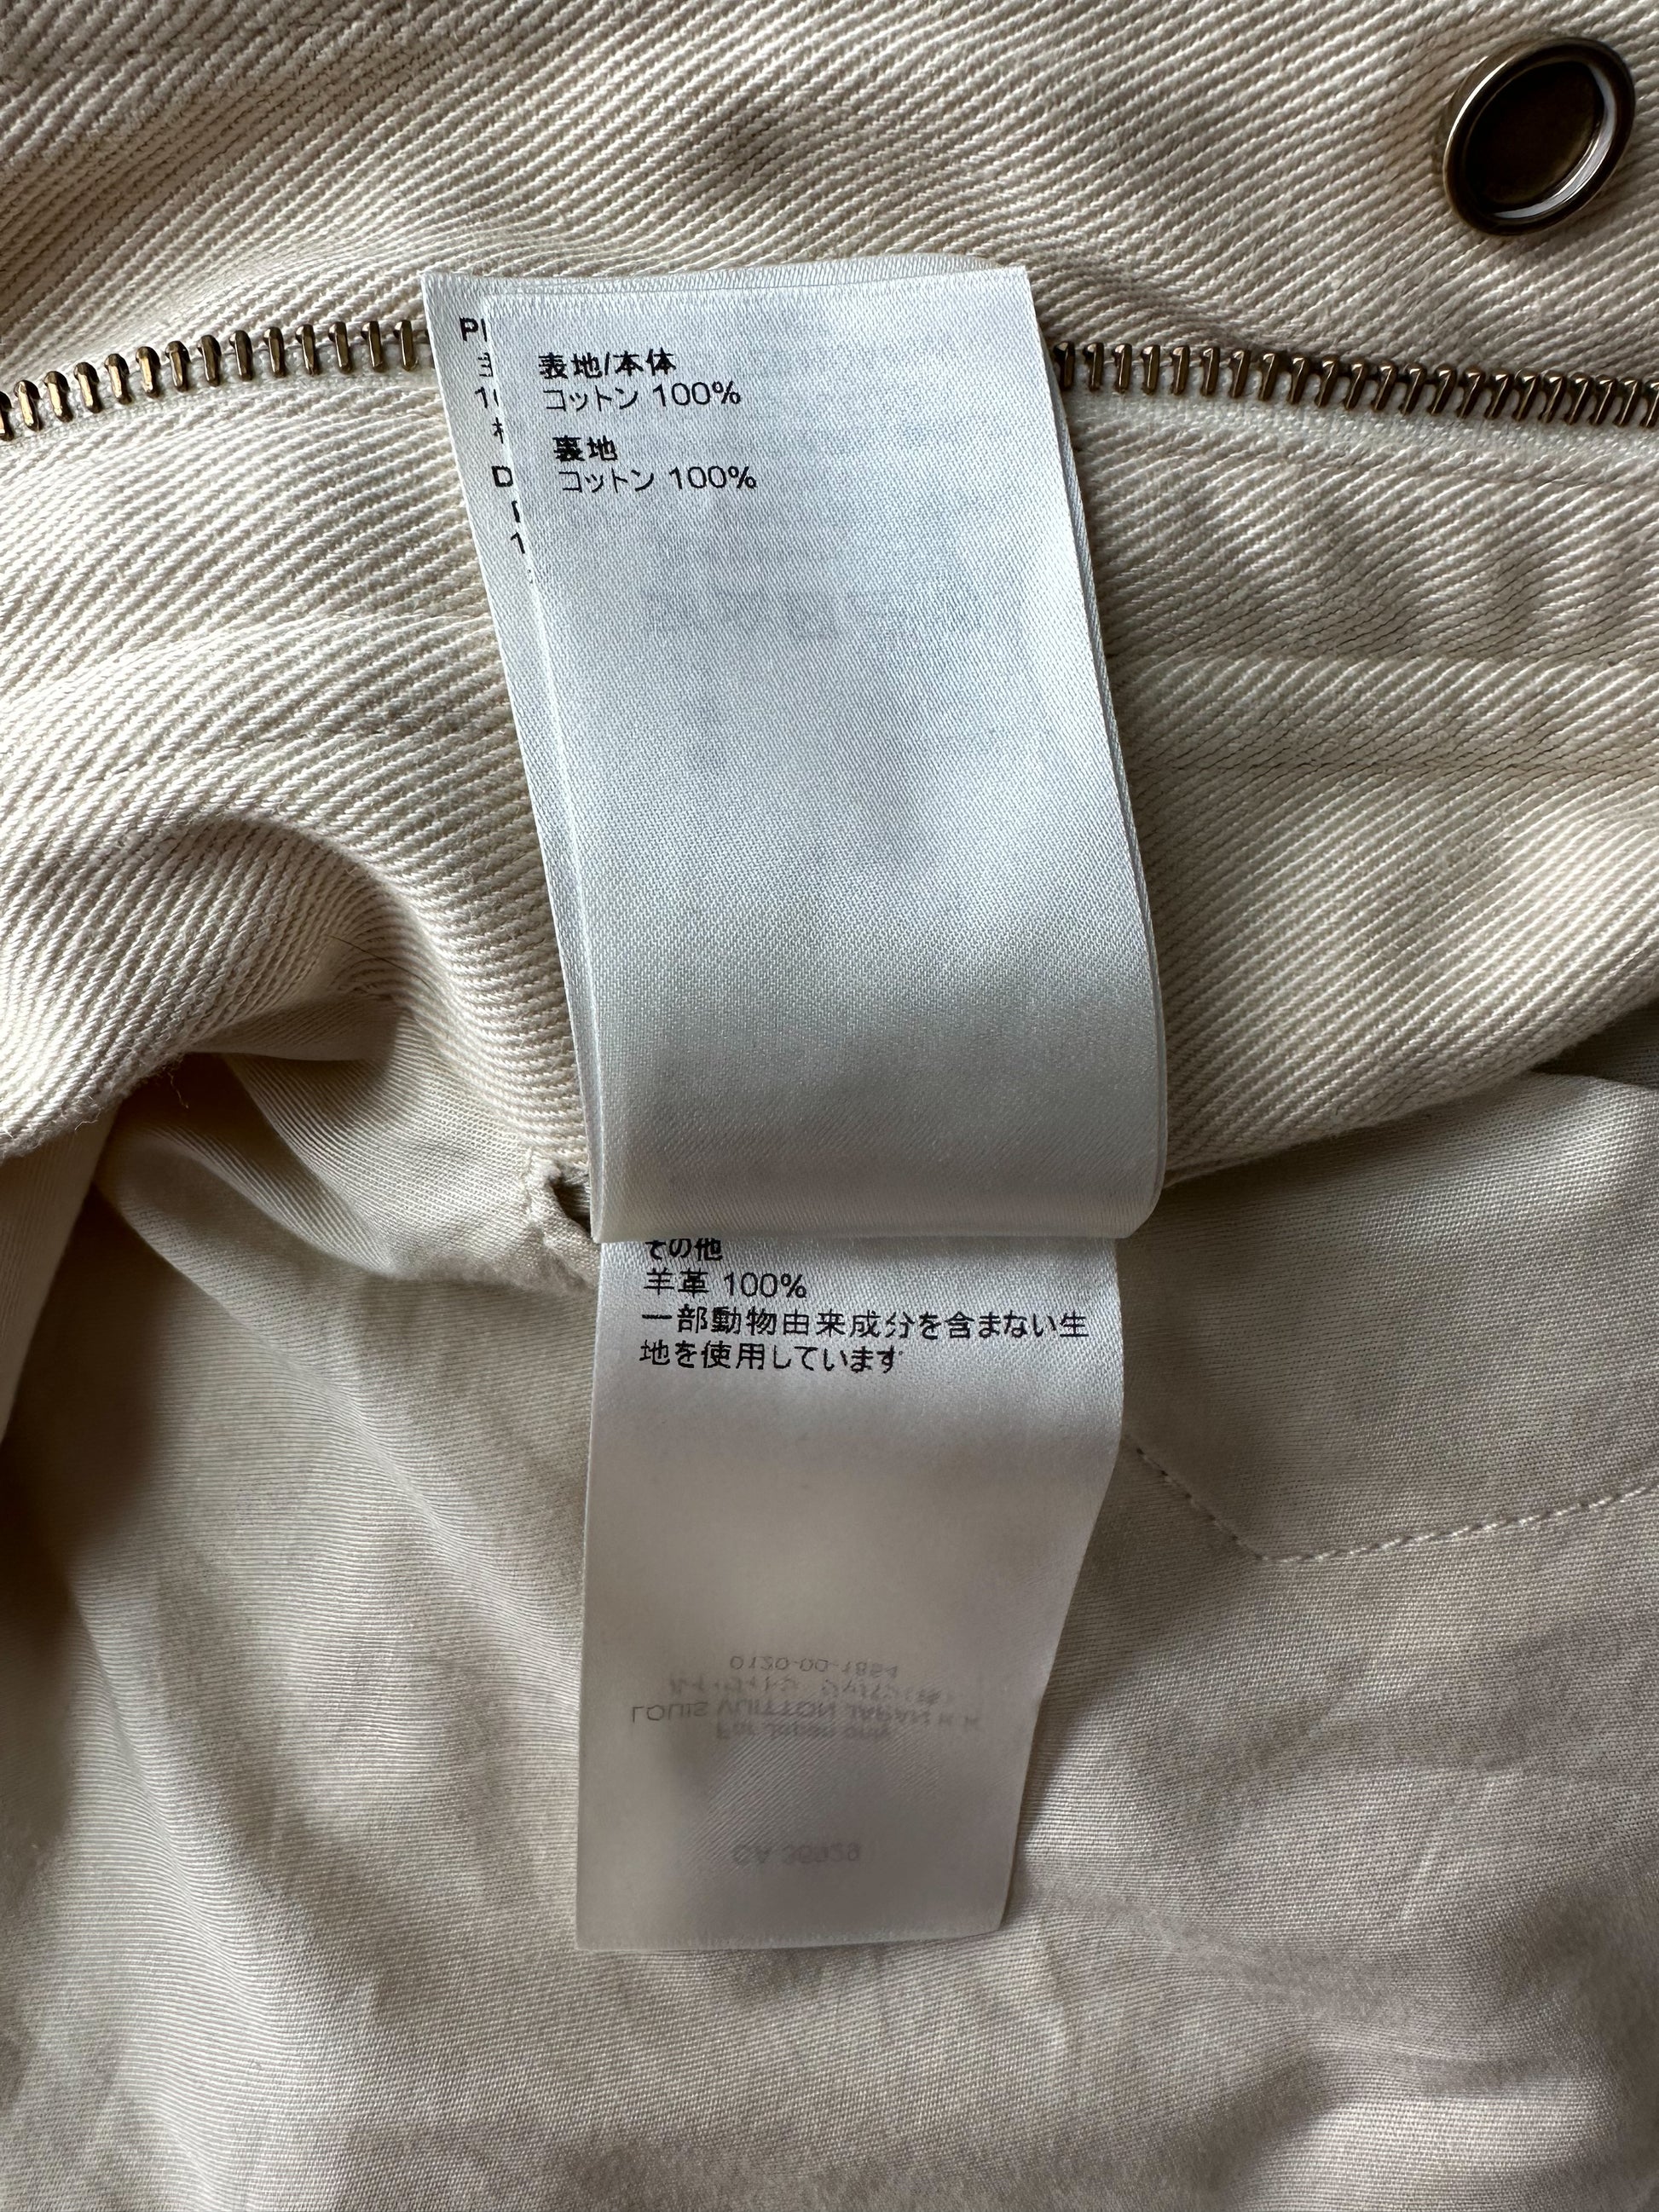 Louis Vuitton Monogram Crazy Denim Workwear Jacket